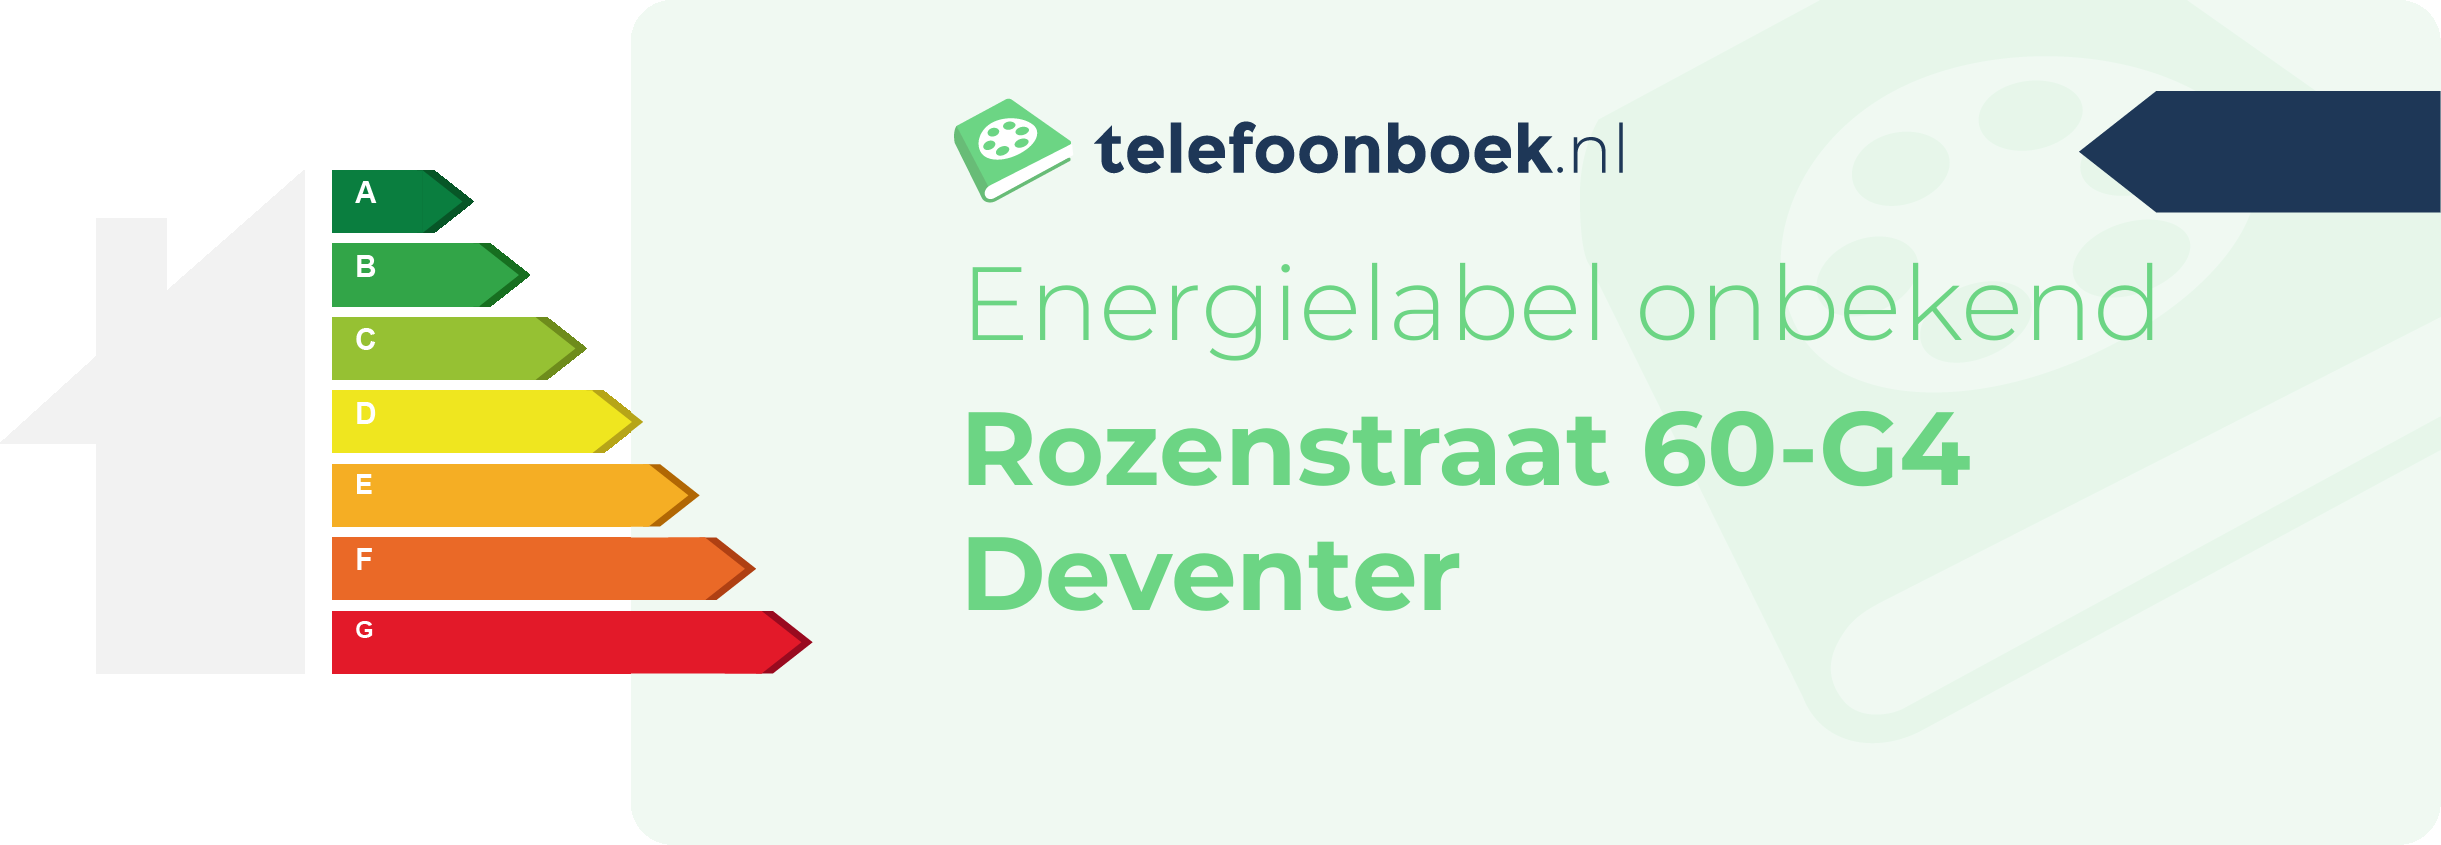 Energielabel Rozenstraat 60-G4 Deventer